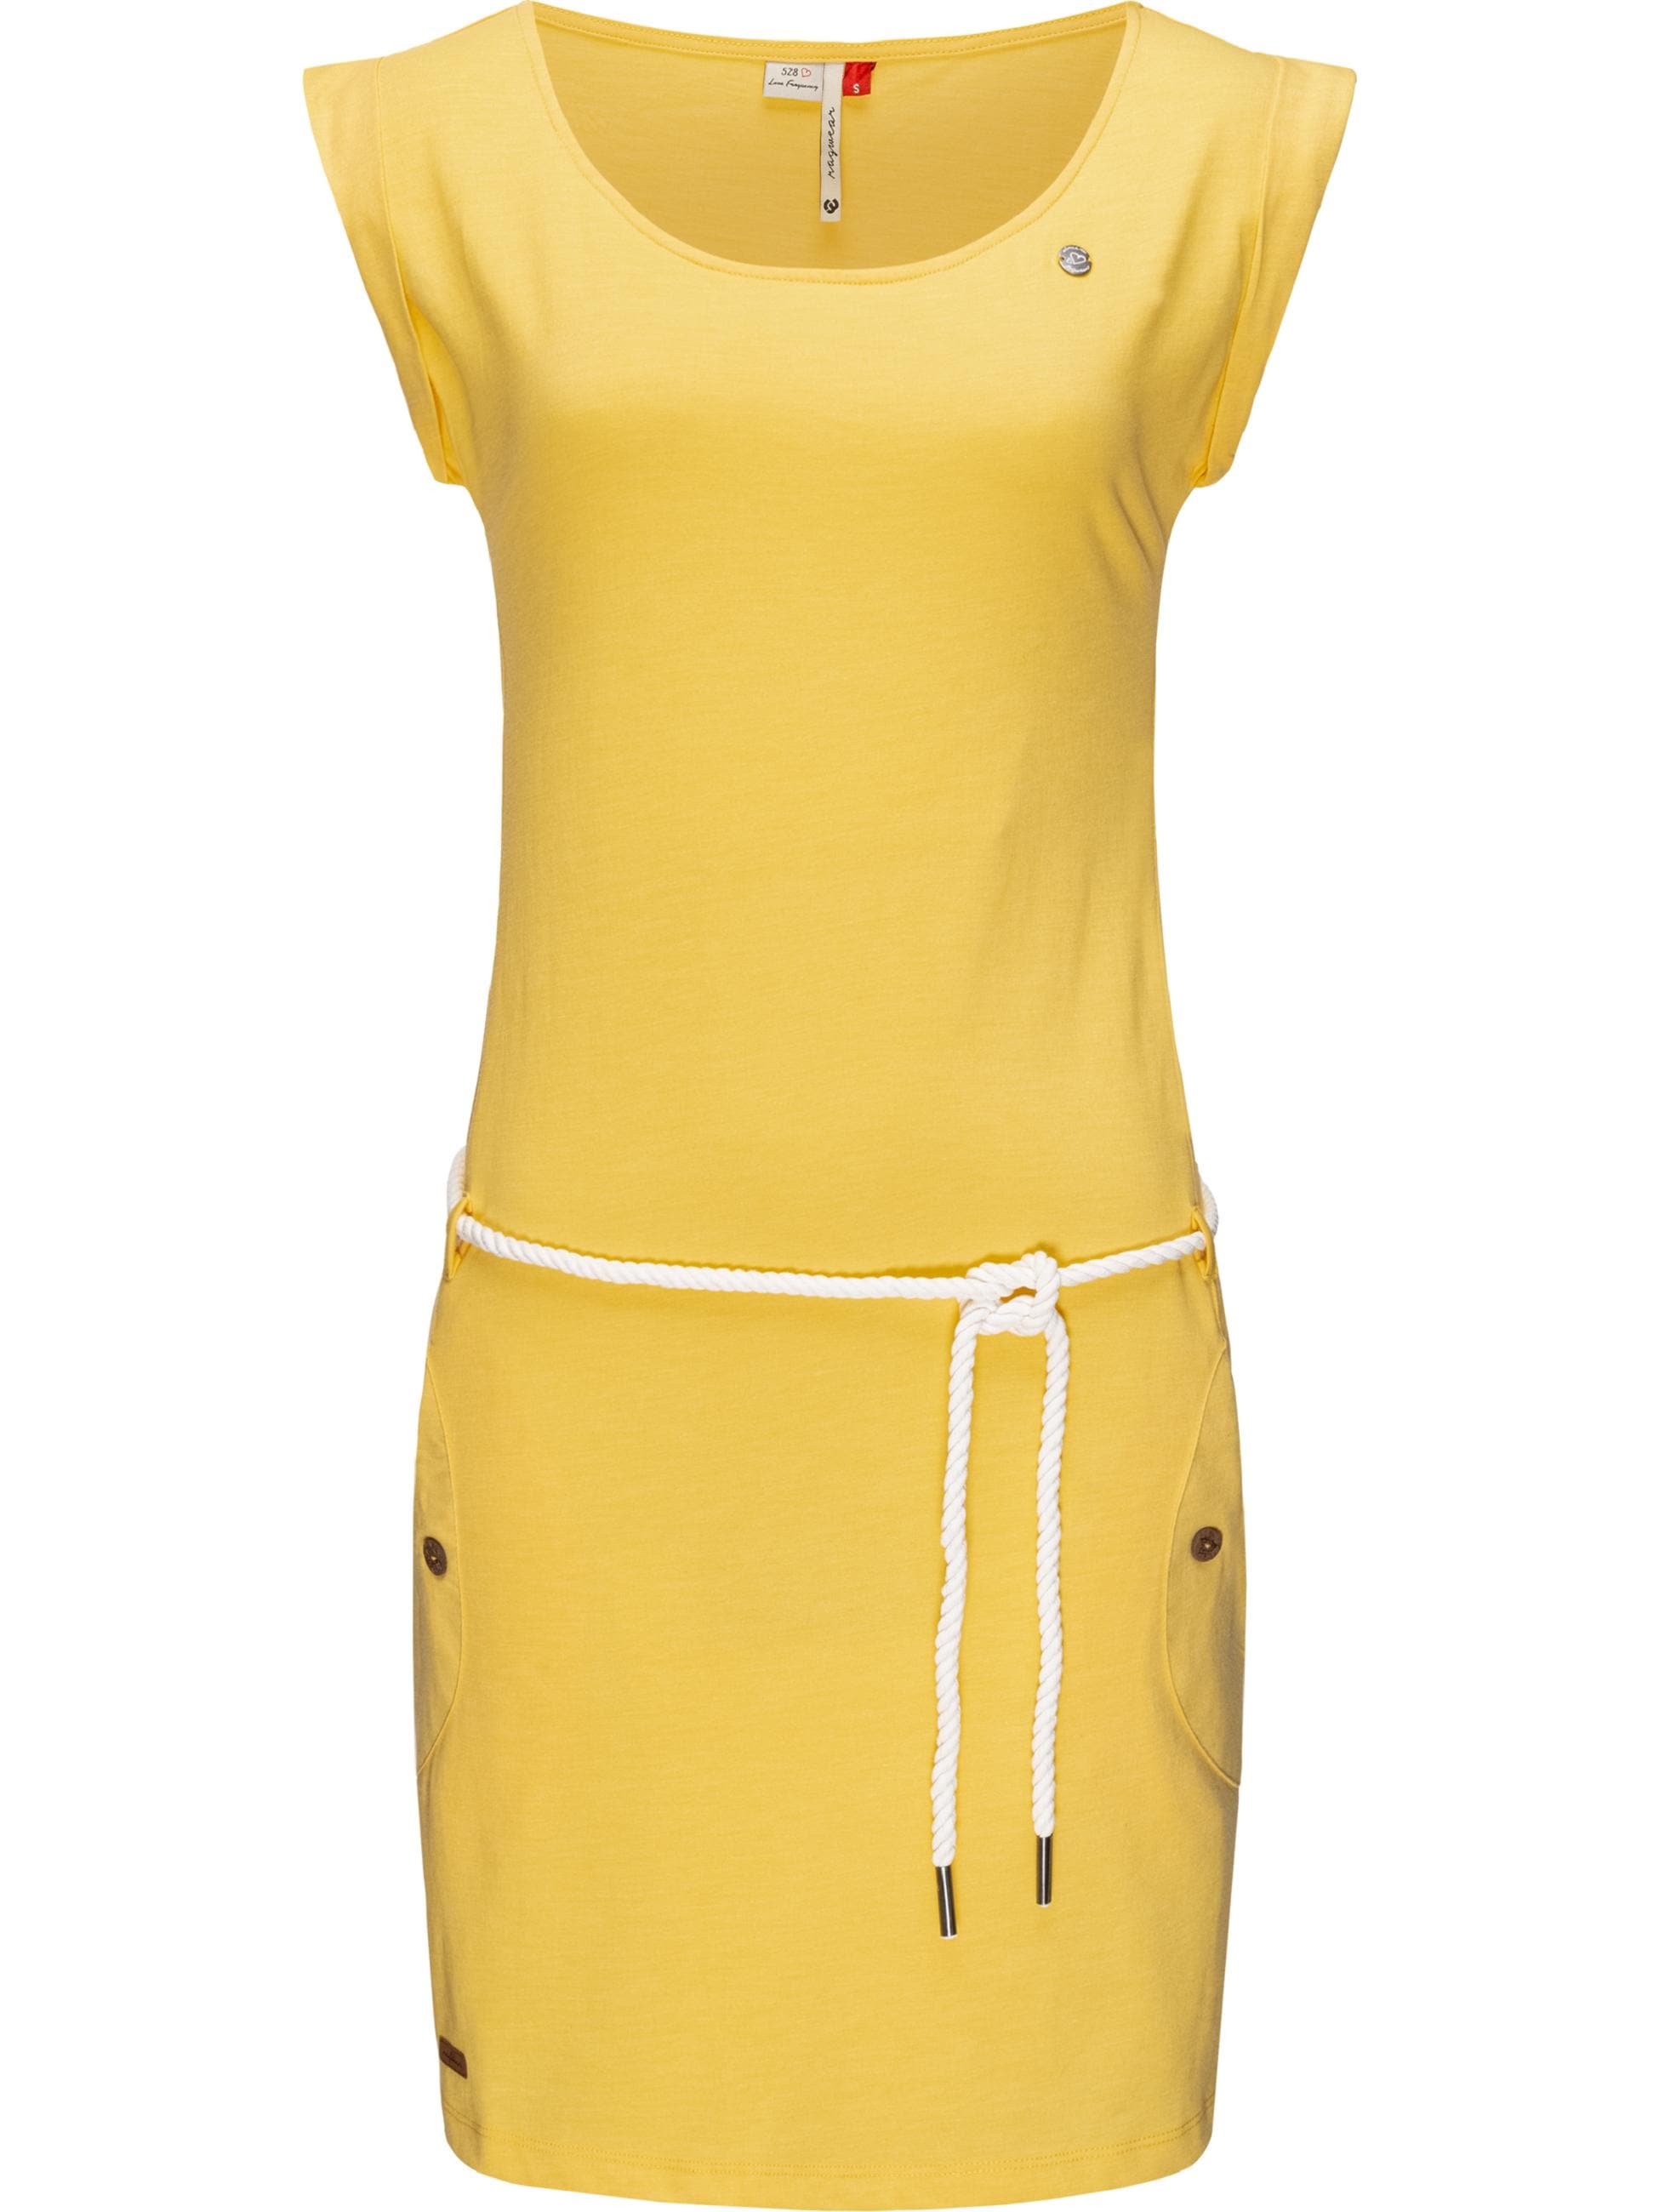 Gelbes Kleid bei OTTO shoppen online Kleider | Gelbe